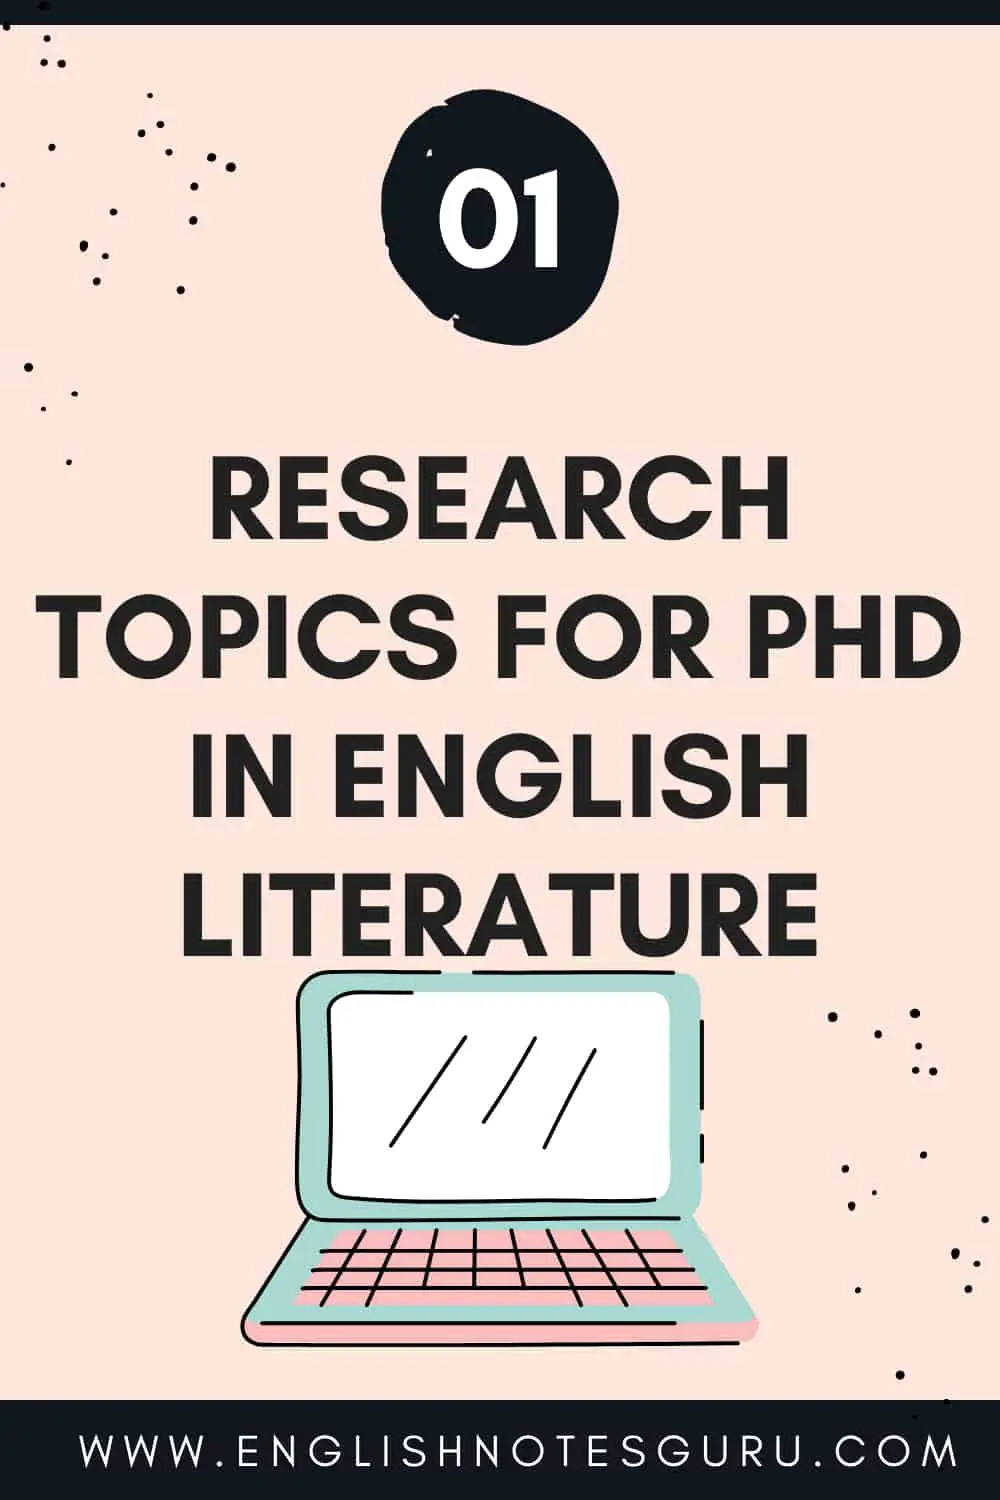 english literature phd research topics